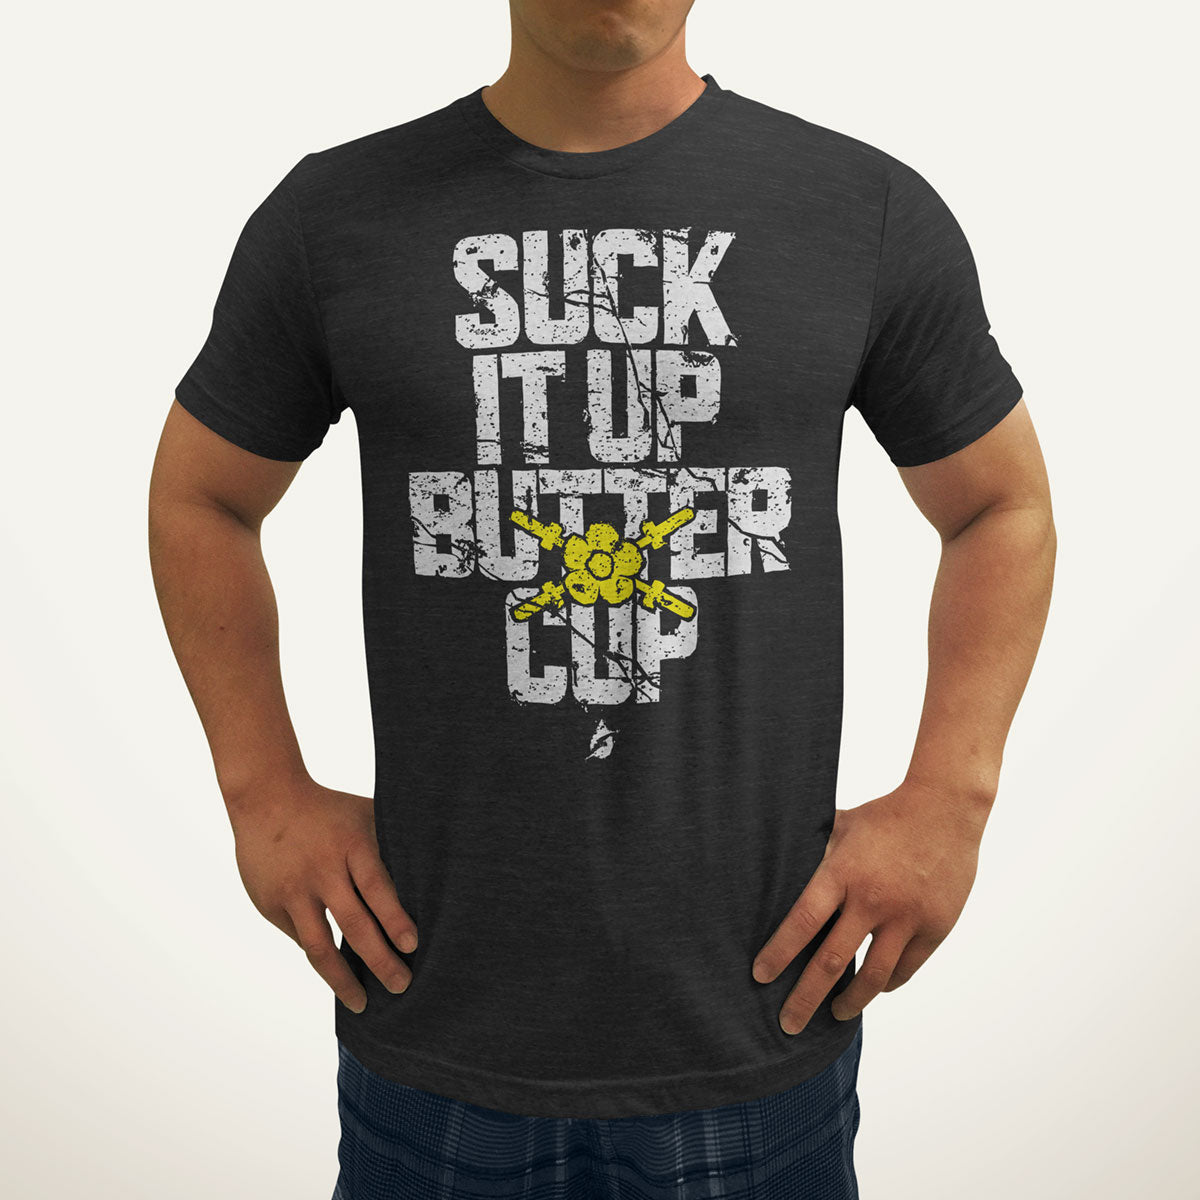 Suck It Up Buttercup Men's T-Shirt